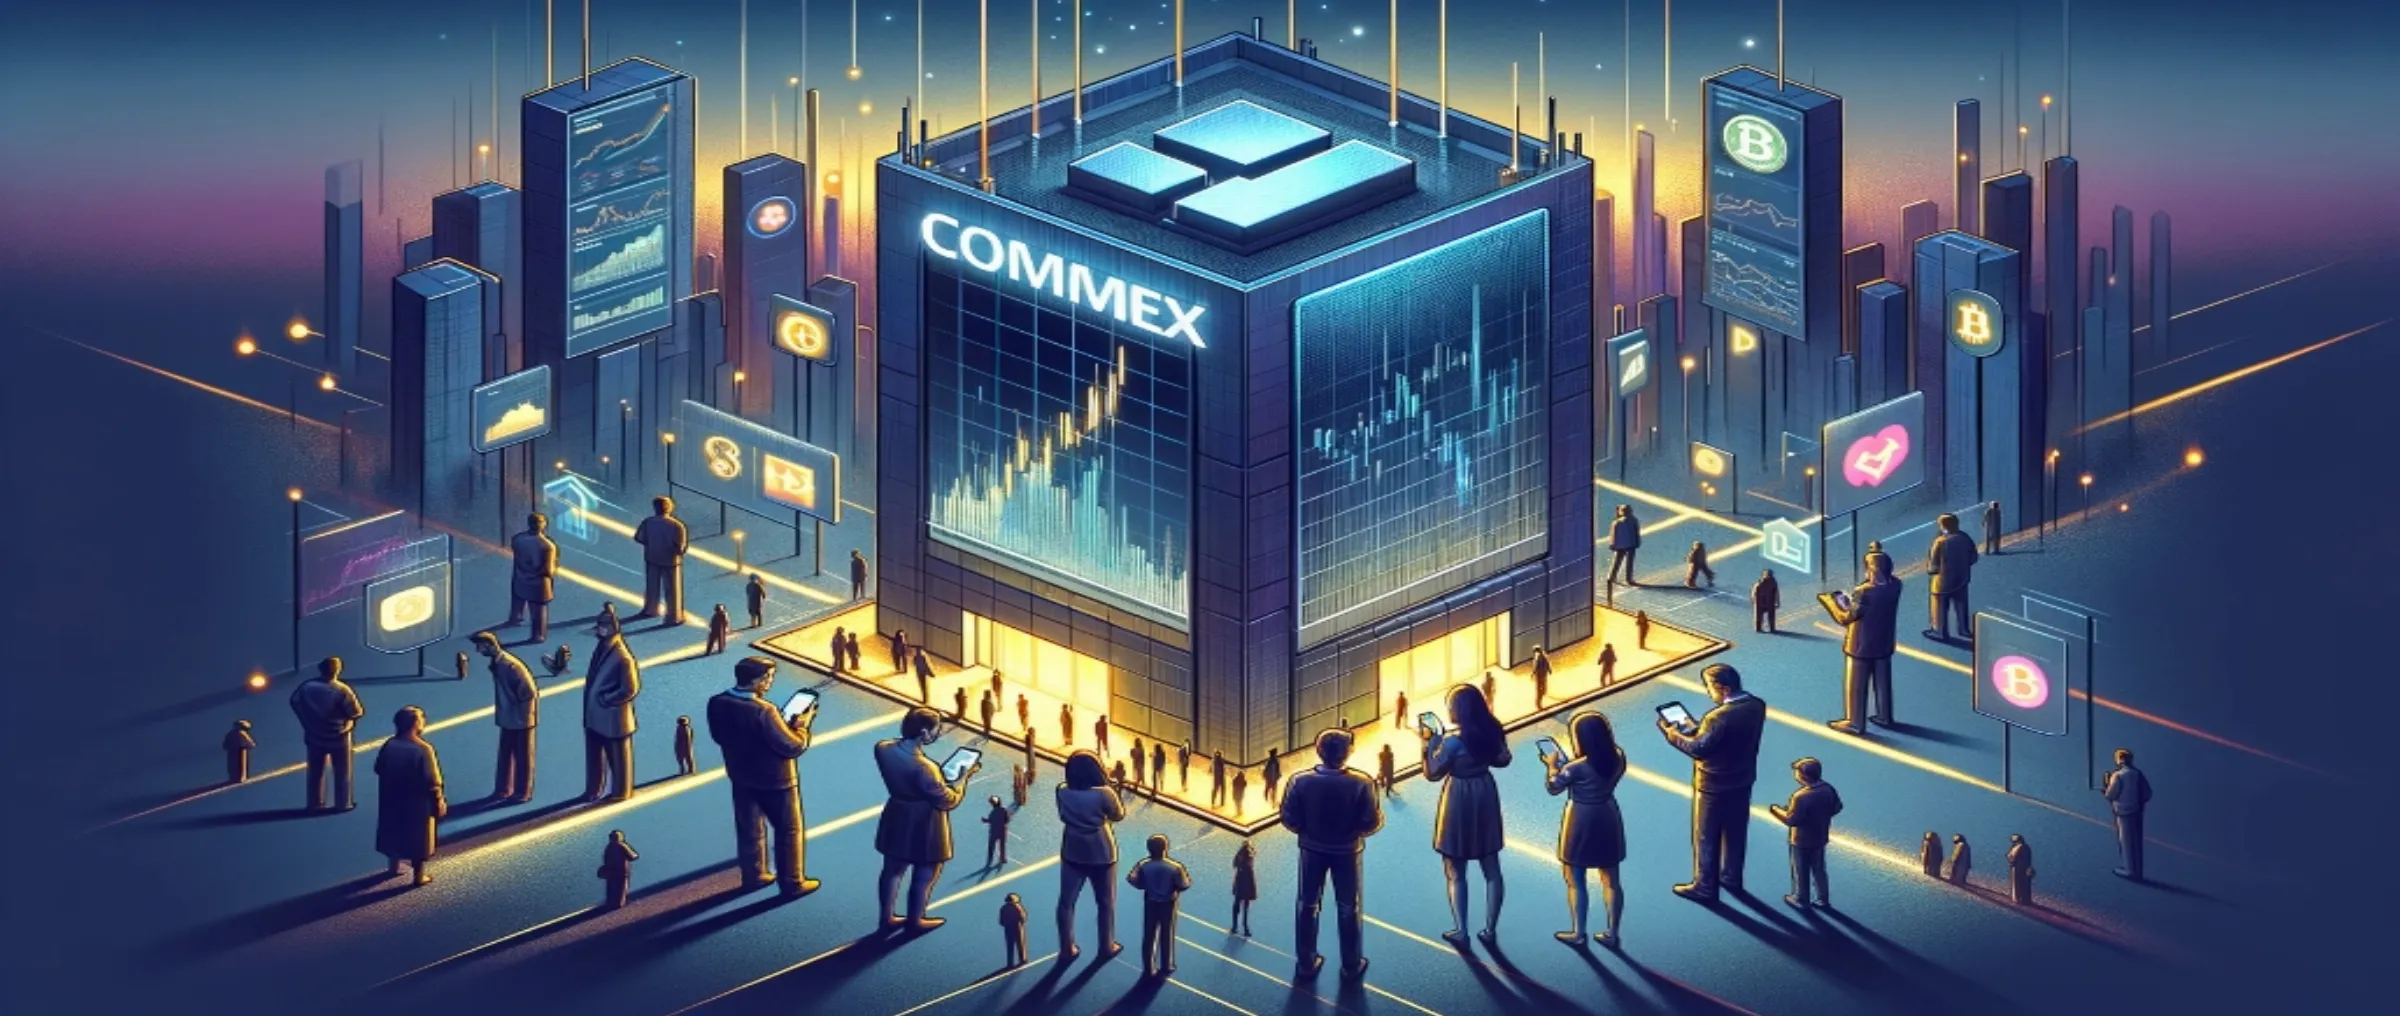 CommEX закрывается: что делать бывшим клиентам Binance?